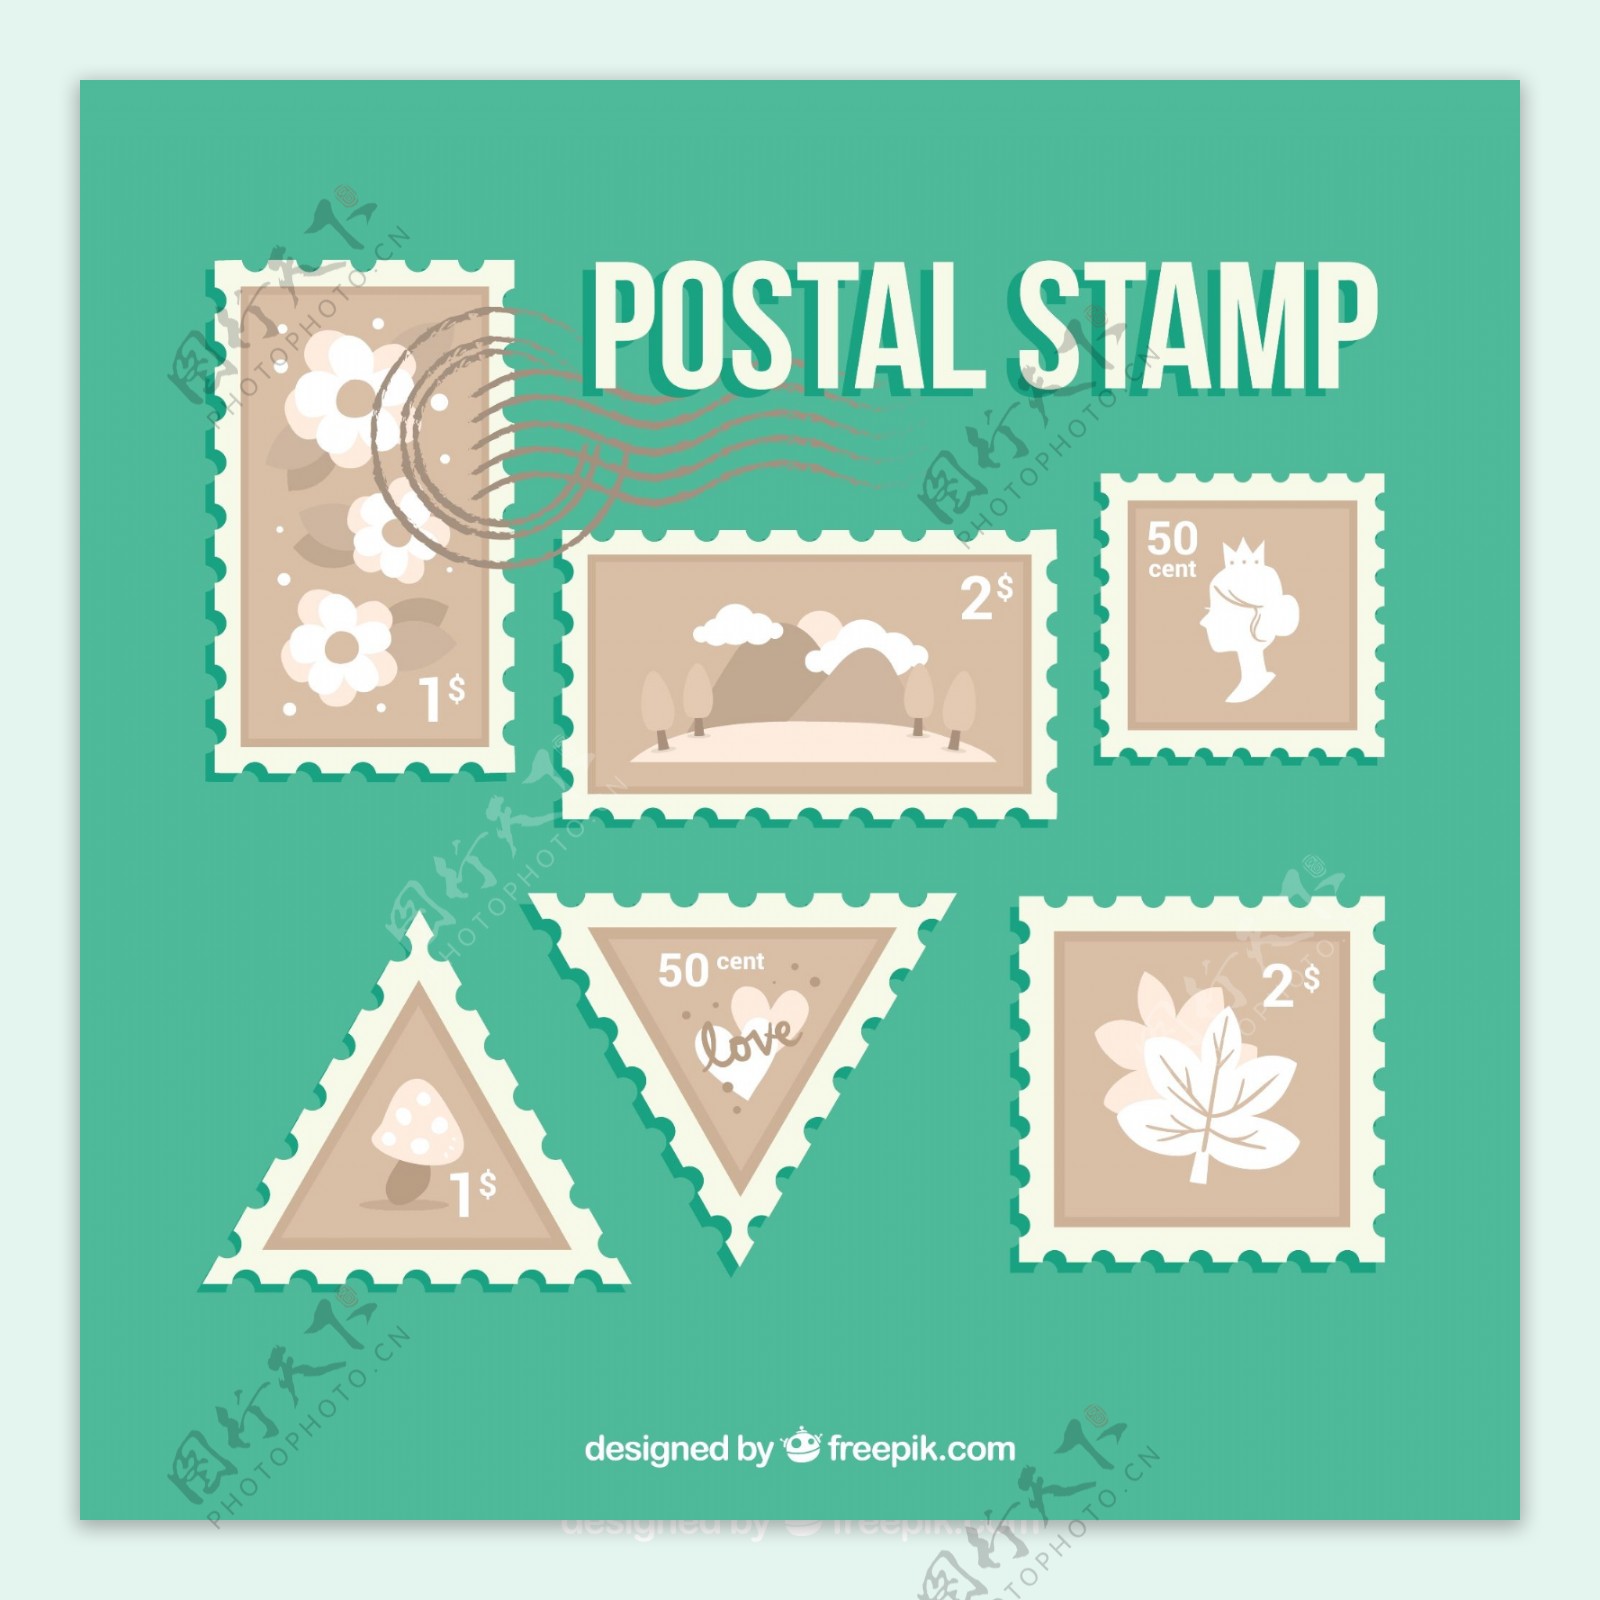 老式邮政邮票平面设计